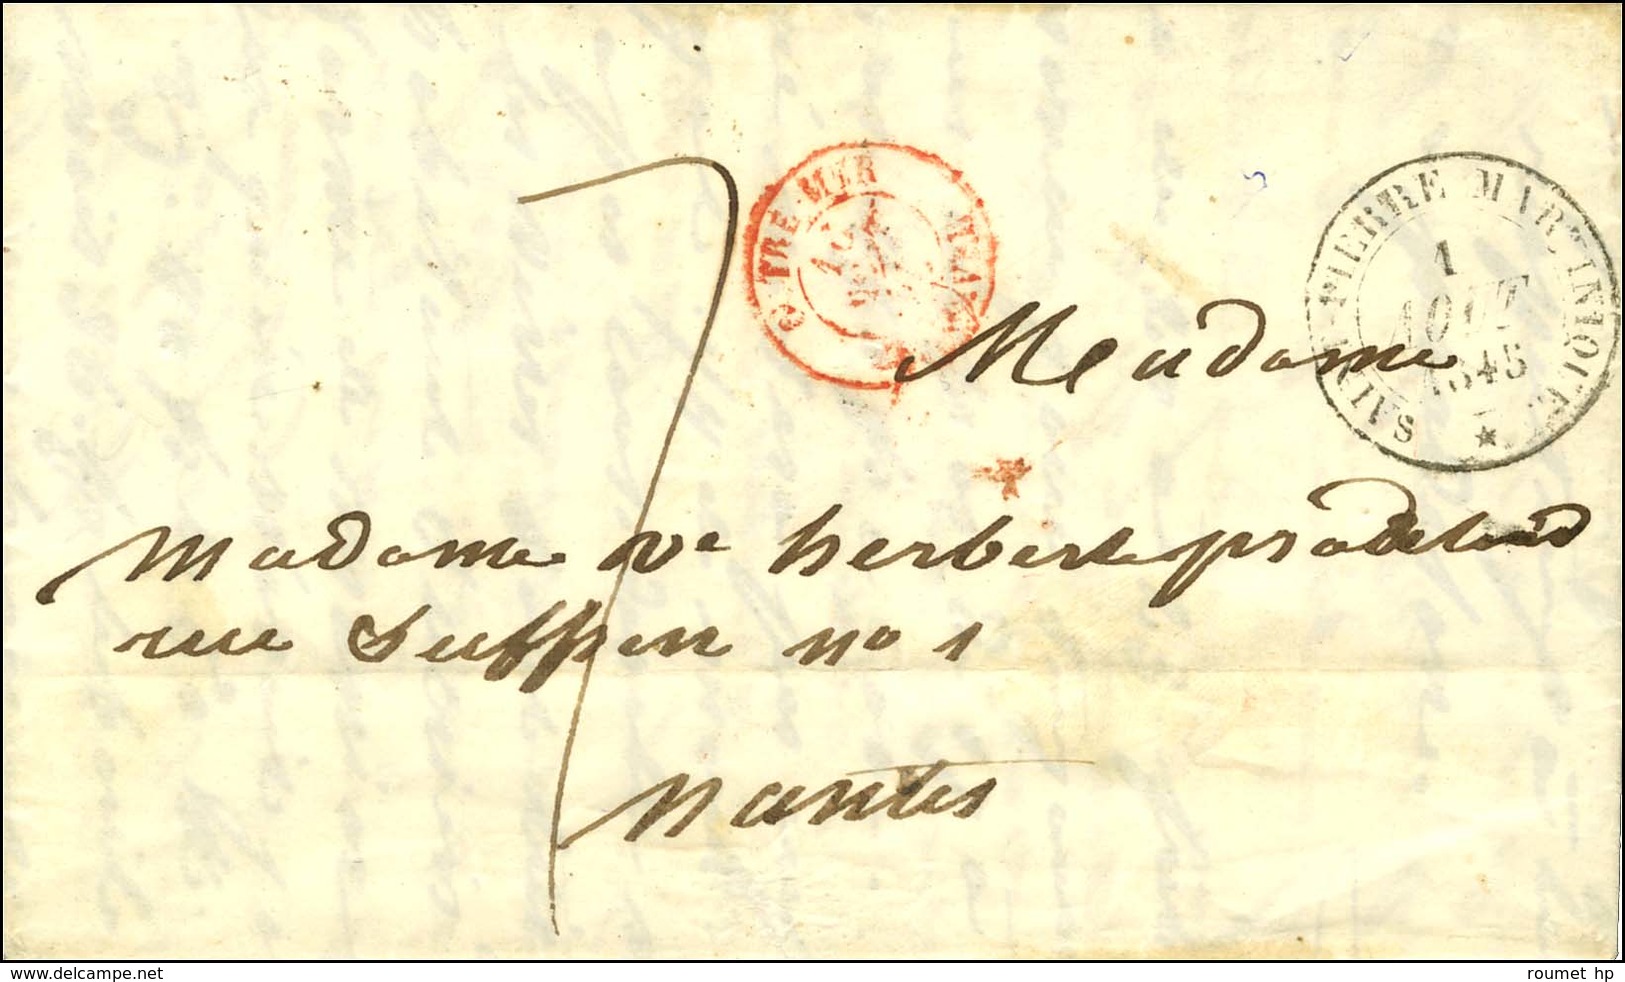 Lettre Avec Texte Daté De Case Navire Le 18 Juillet 1845 Pour Nantes. Au Recto, Càd ST PIERRE MARTINIQUE 1 AOUT 1845. -  - Poste Maritime